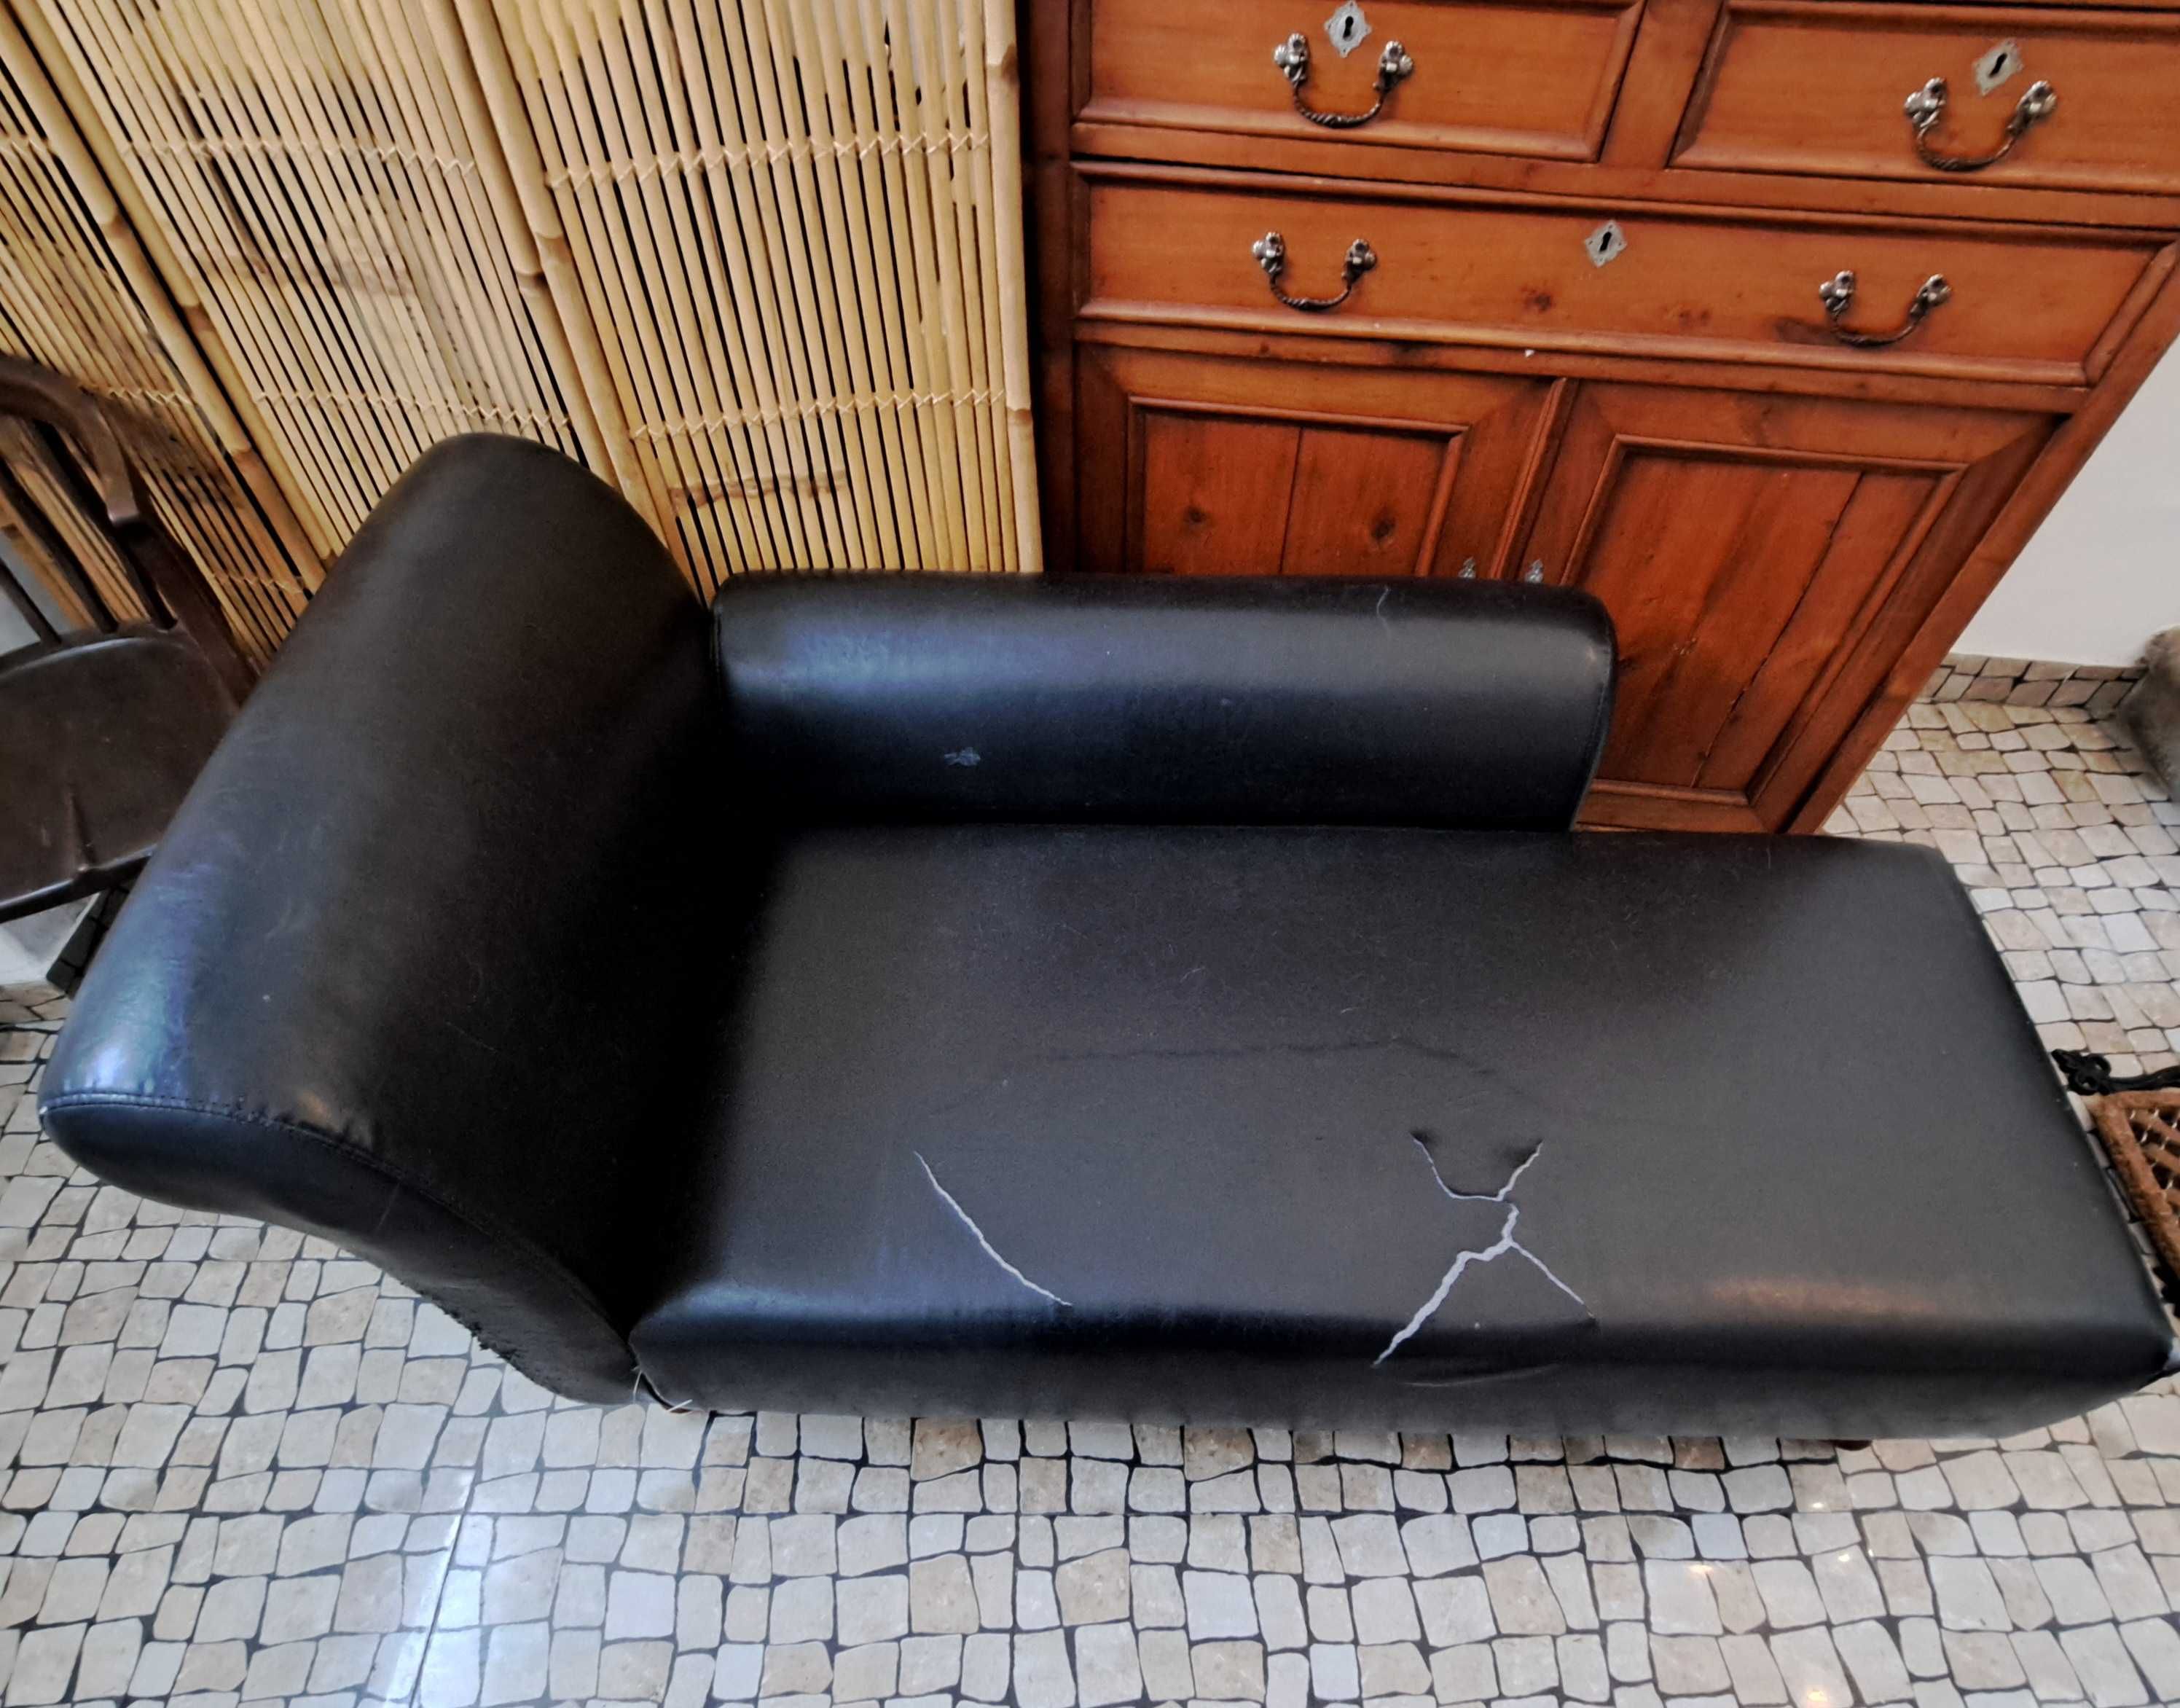 chaise longue sofa